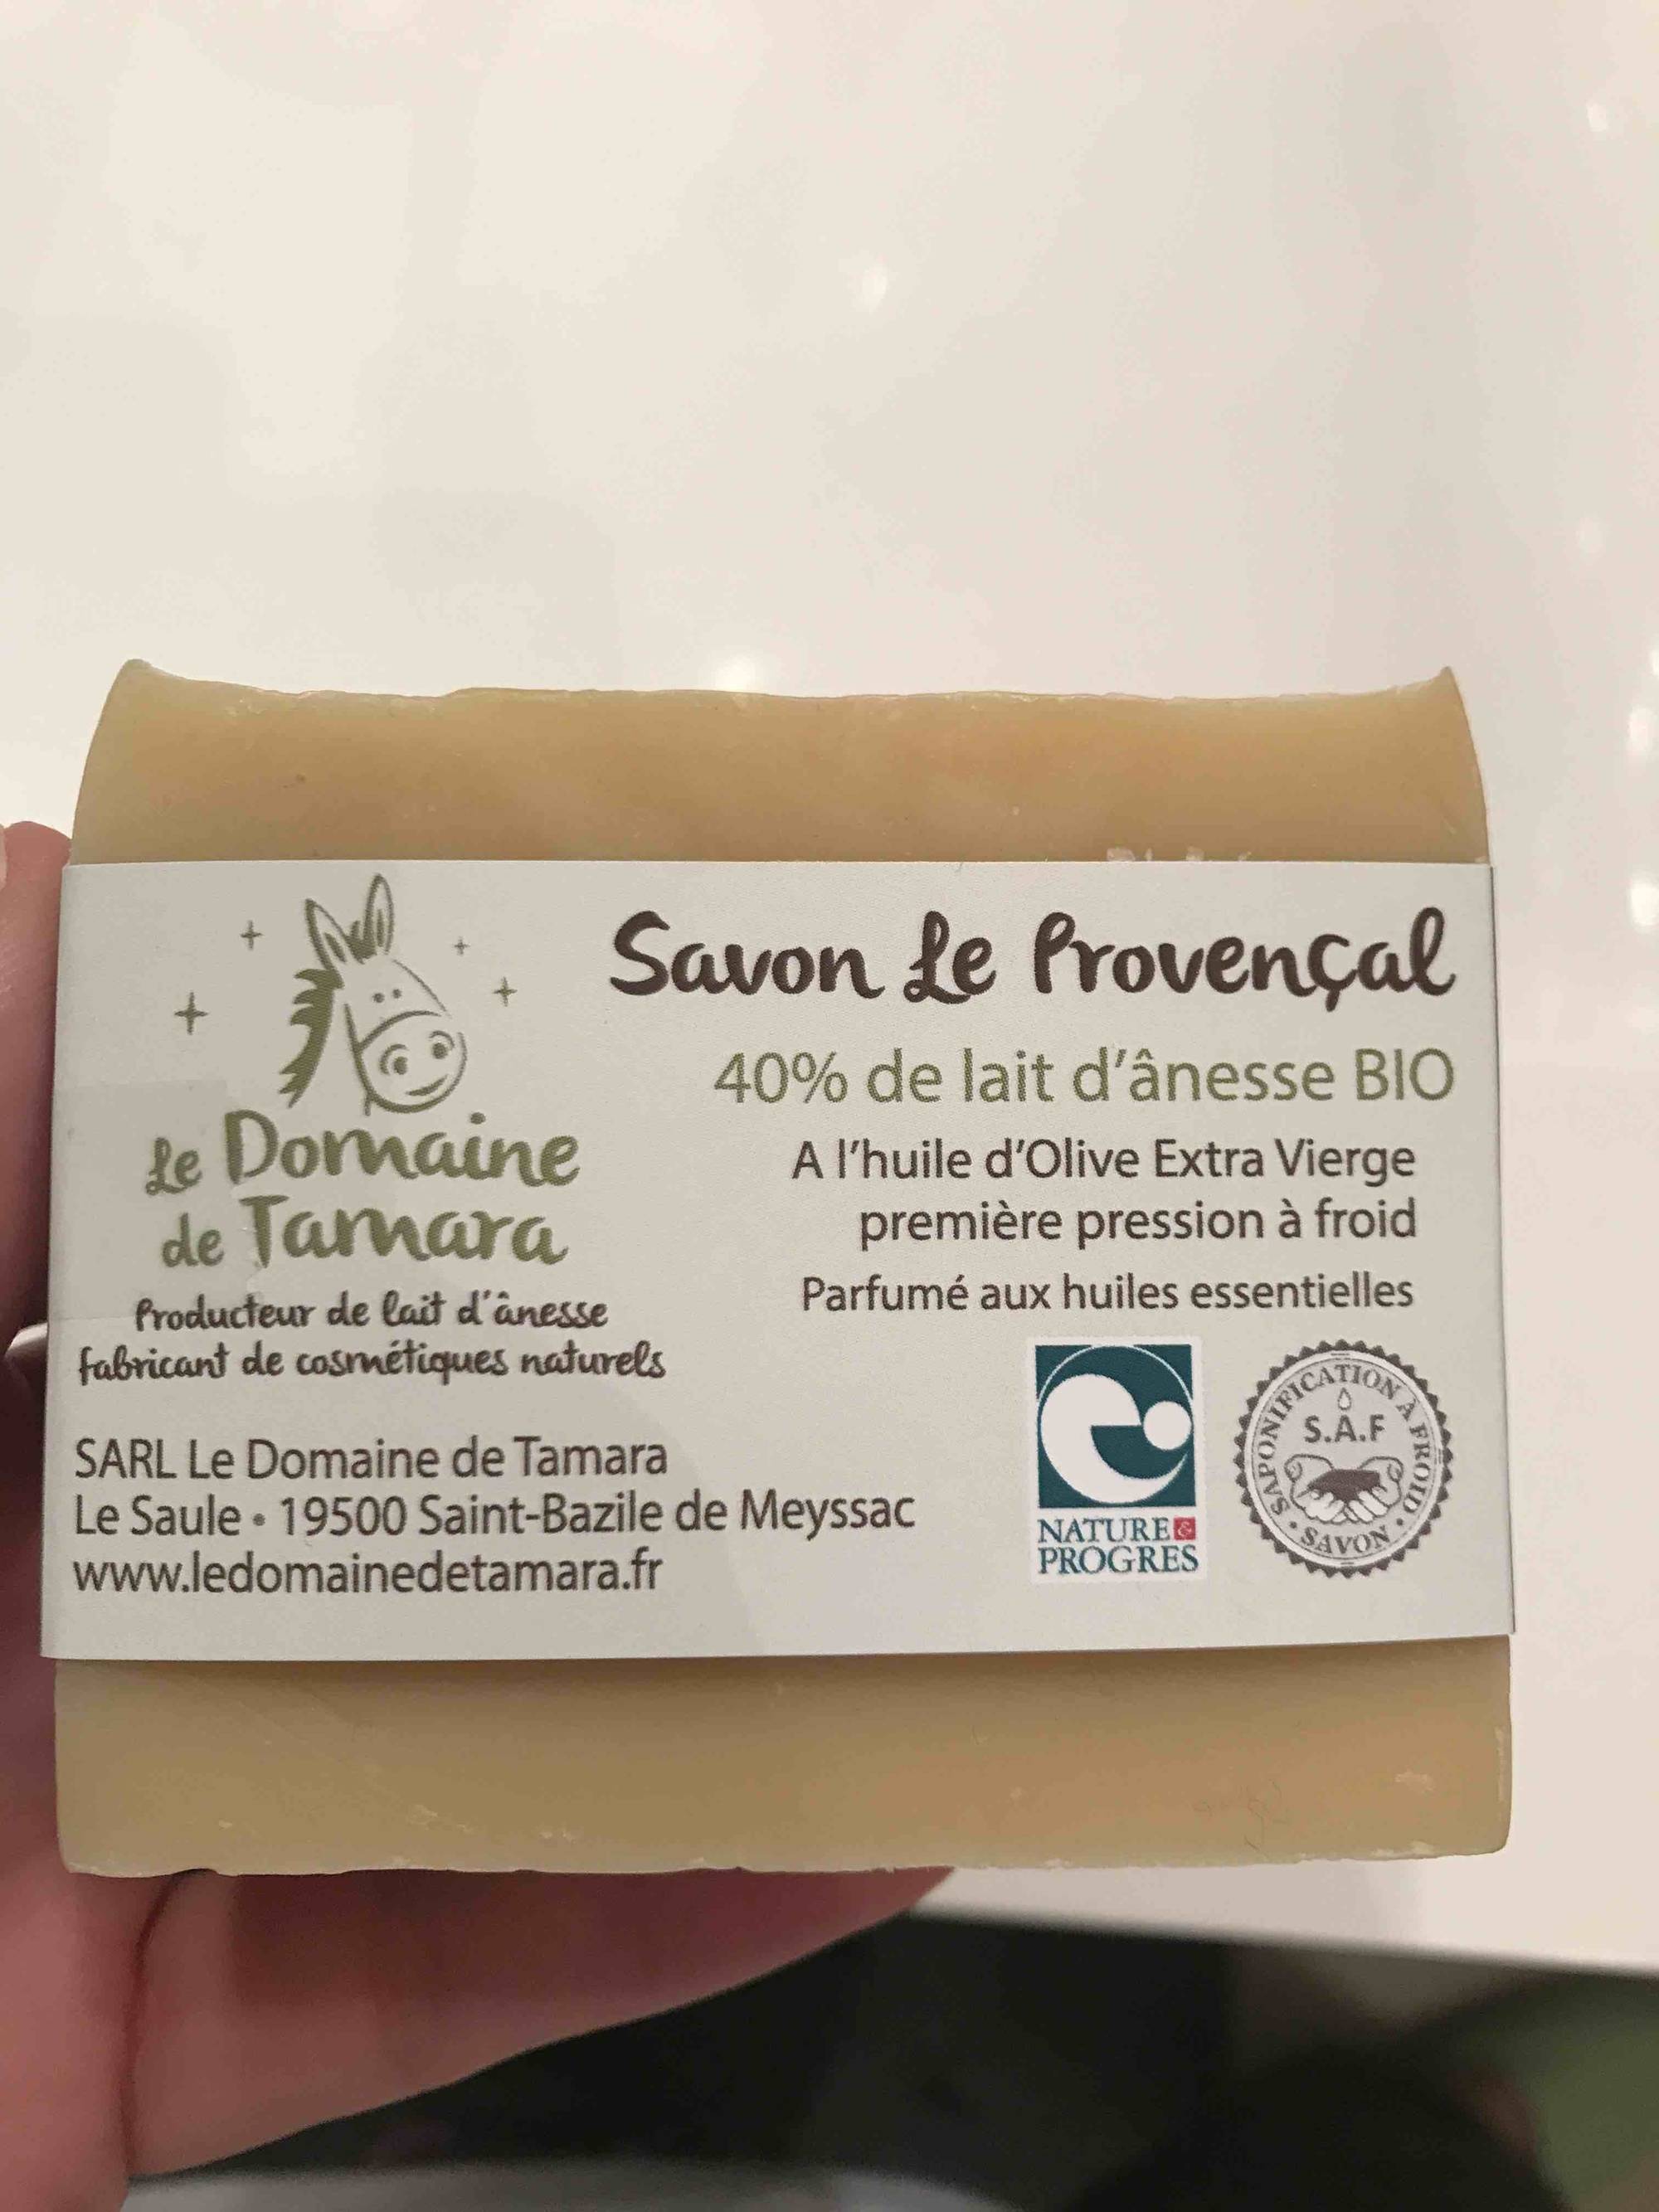 LE DOMAINE DE TAMARA - Savon Le Provençal - 40% de lait d'ânesse bio